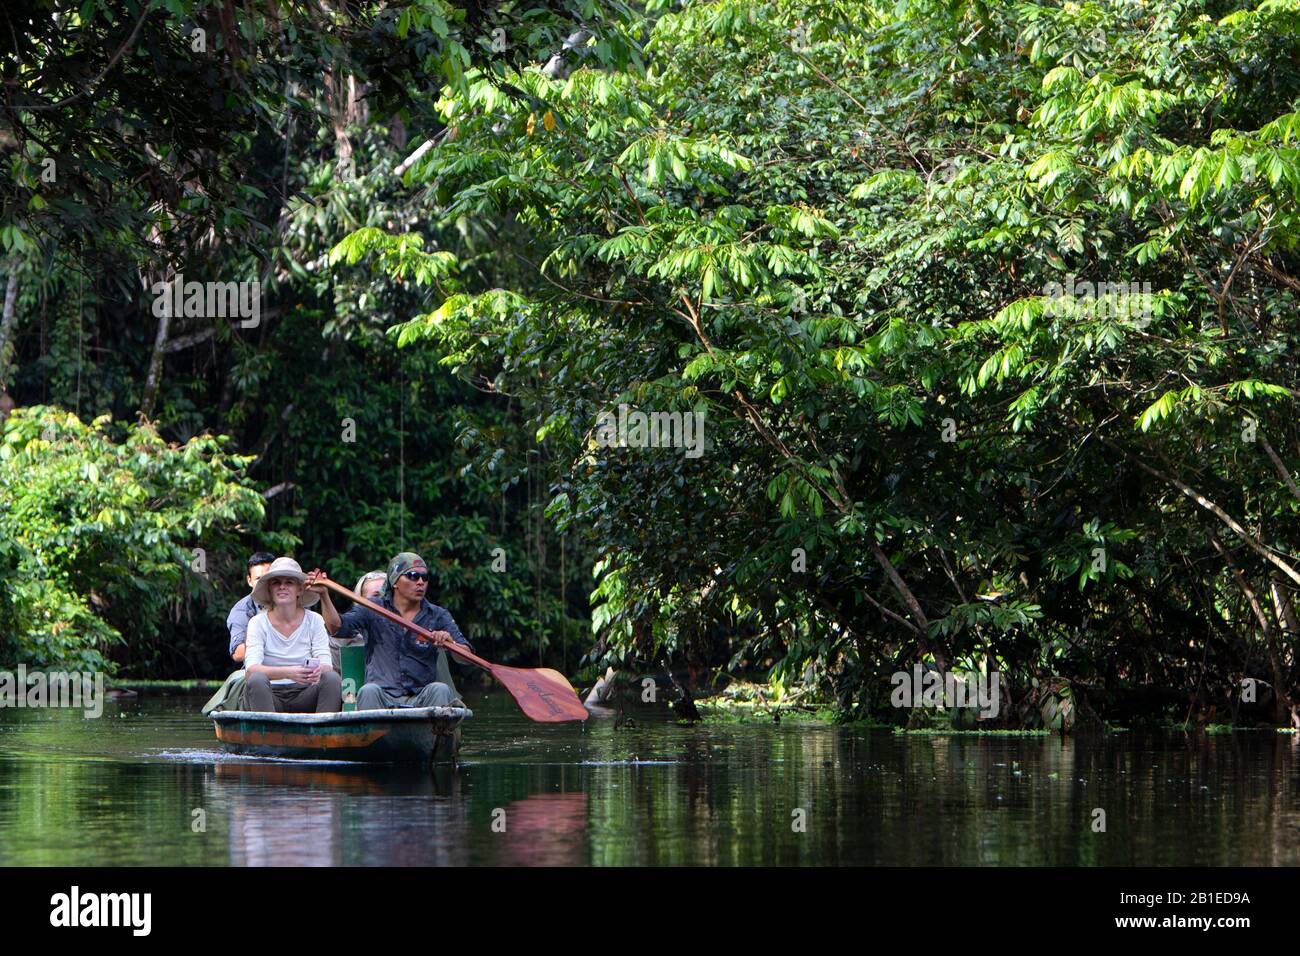 Ecoturismo en bosques inundables, refugio de vida silvestre Napo, Parque Nacional Yasuní, Amazonas, Ecuador Foto de stock